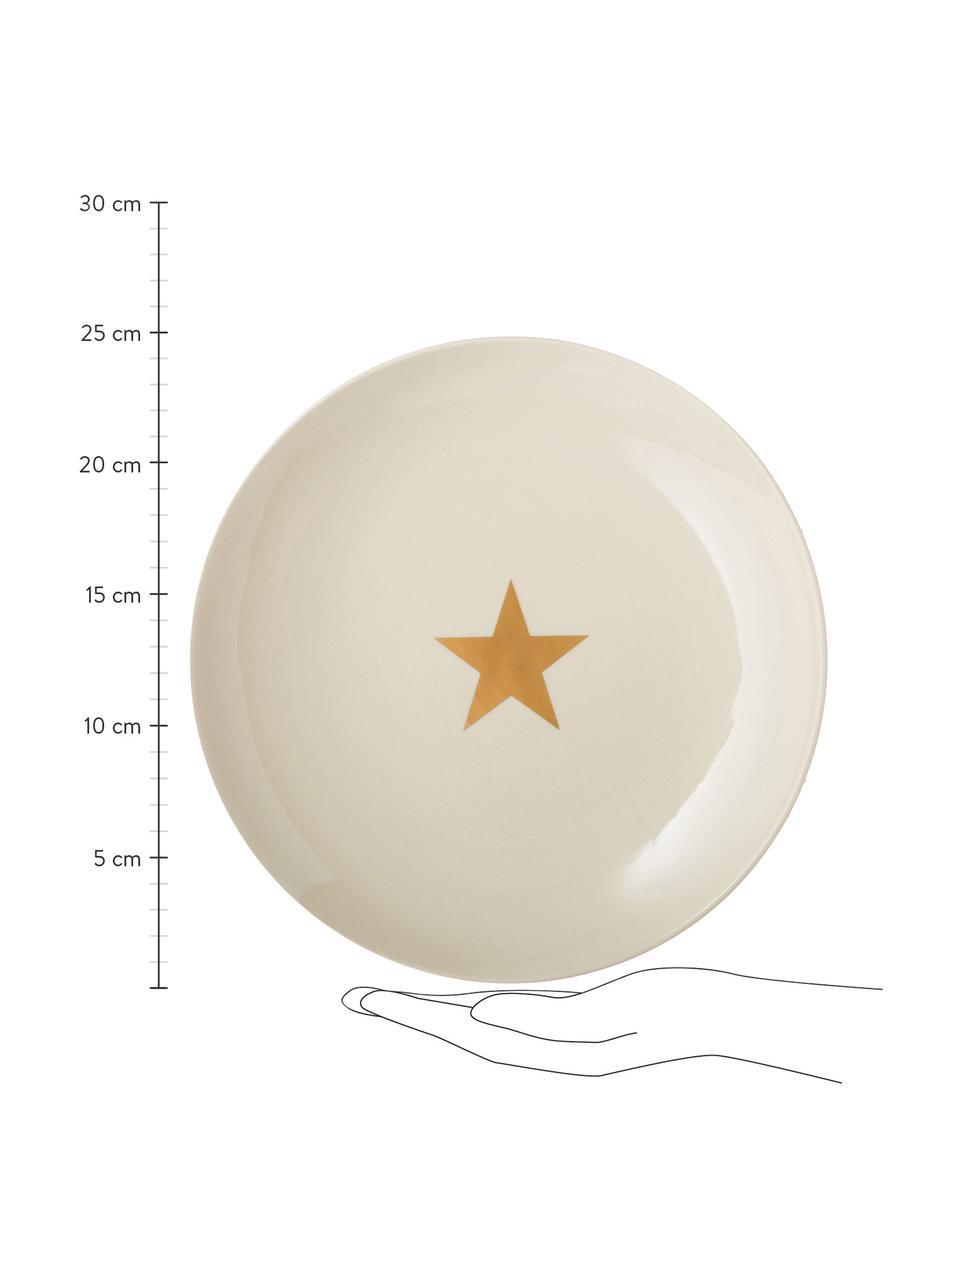 Mělký talíř se zlatou hvězdou Star, Keramika, Světle bílá, zlatá, Ø 25 cm